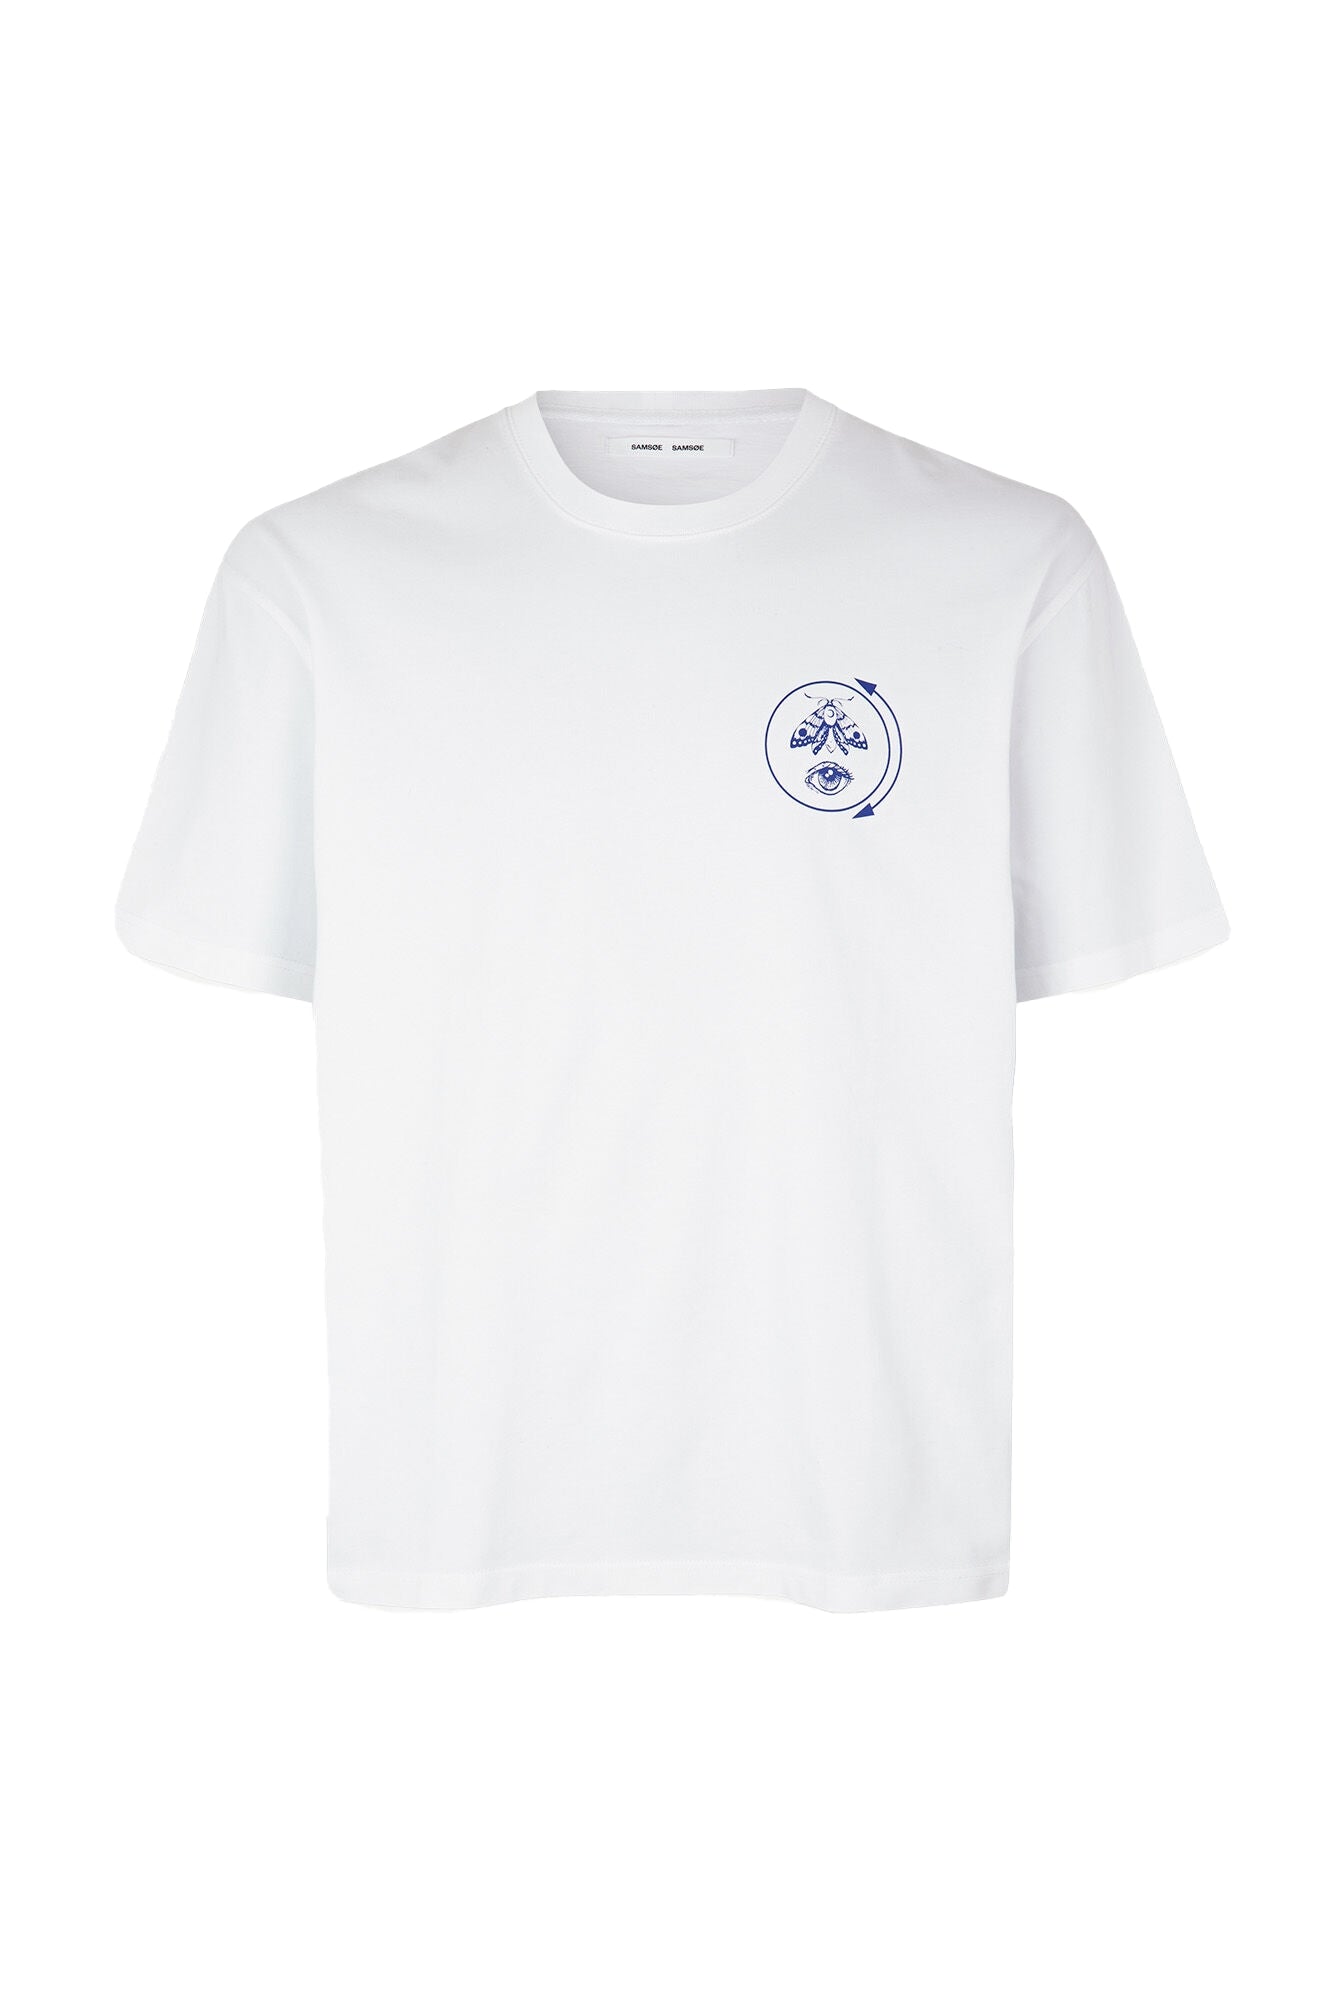 Future T-Shirt, future earth